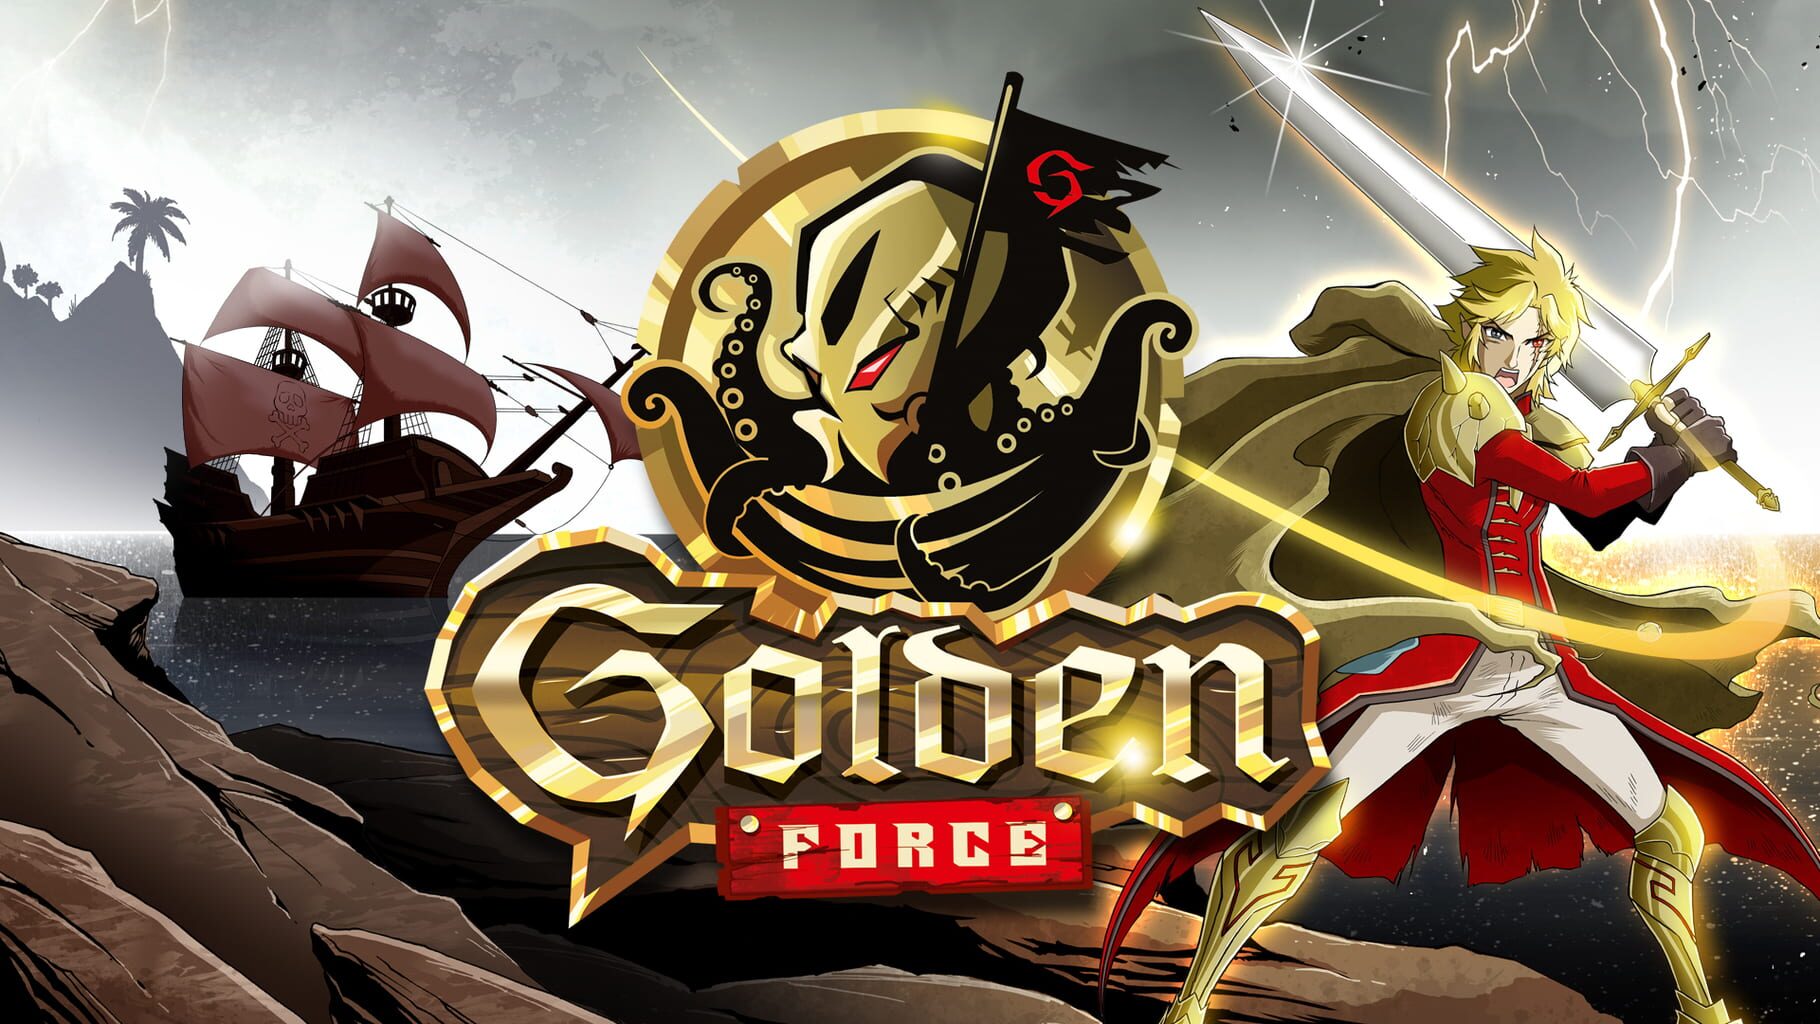 Golden Force artwork